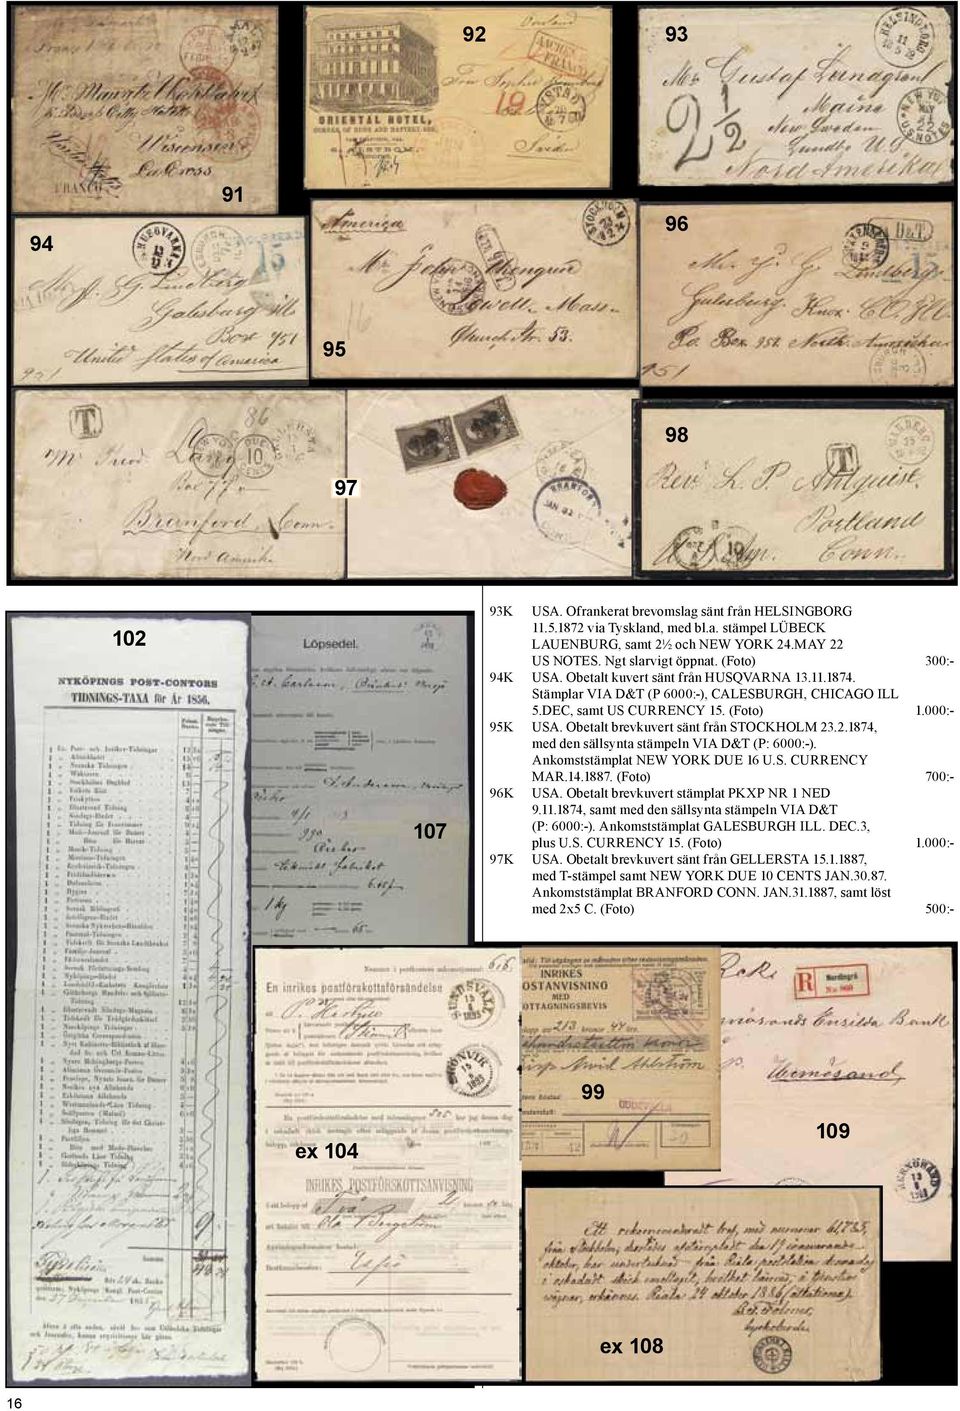 Obetalt brevkuvert sänt från STOCKHOLM 23.2.1874, med den sällsynta stämpeln VIA D&T (P: 6000:-). Ankomststämplat NEW YORK DUE 16 U.S. CURRENCY 96K MAR.14.1887. (Foto) 700:- USA.